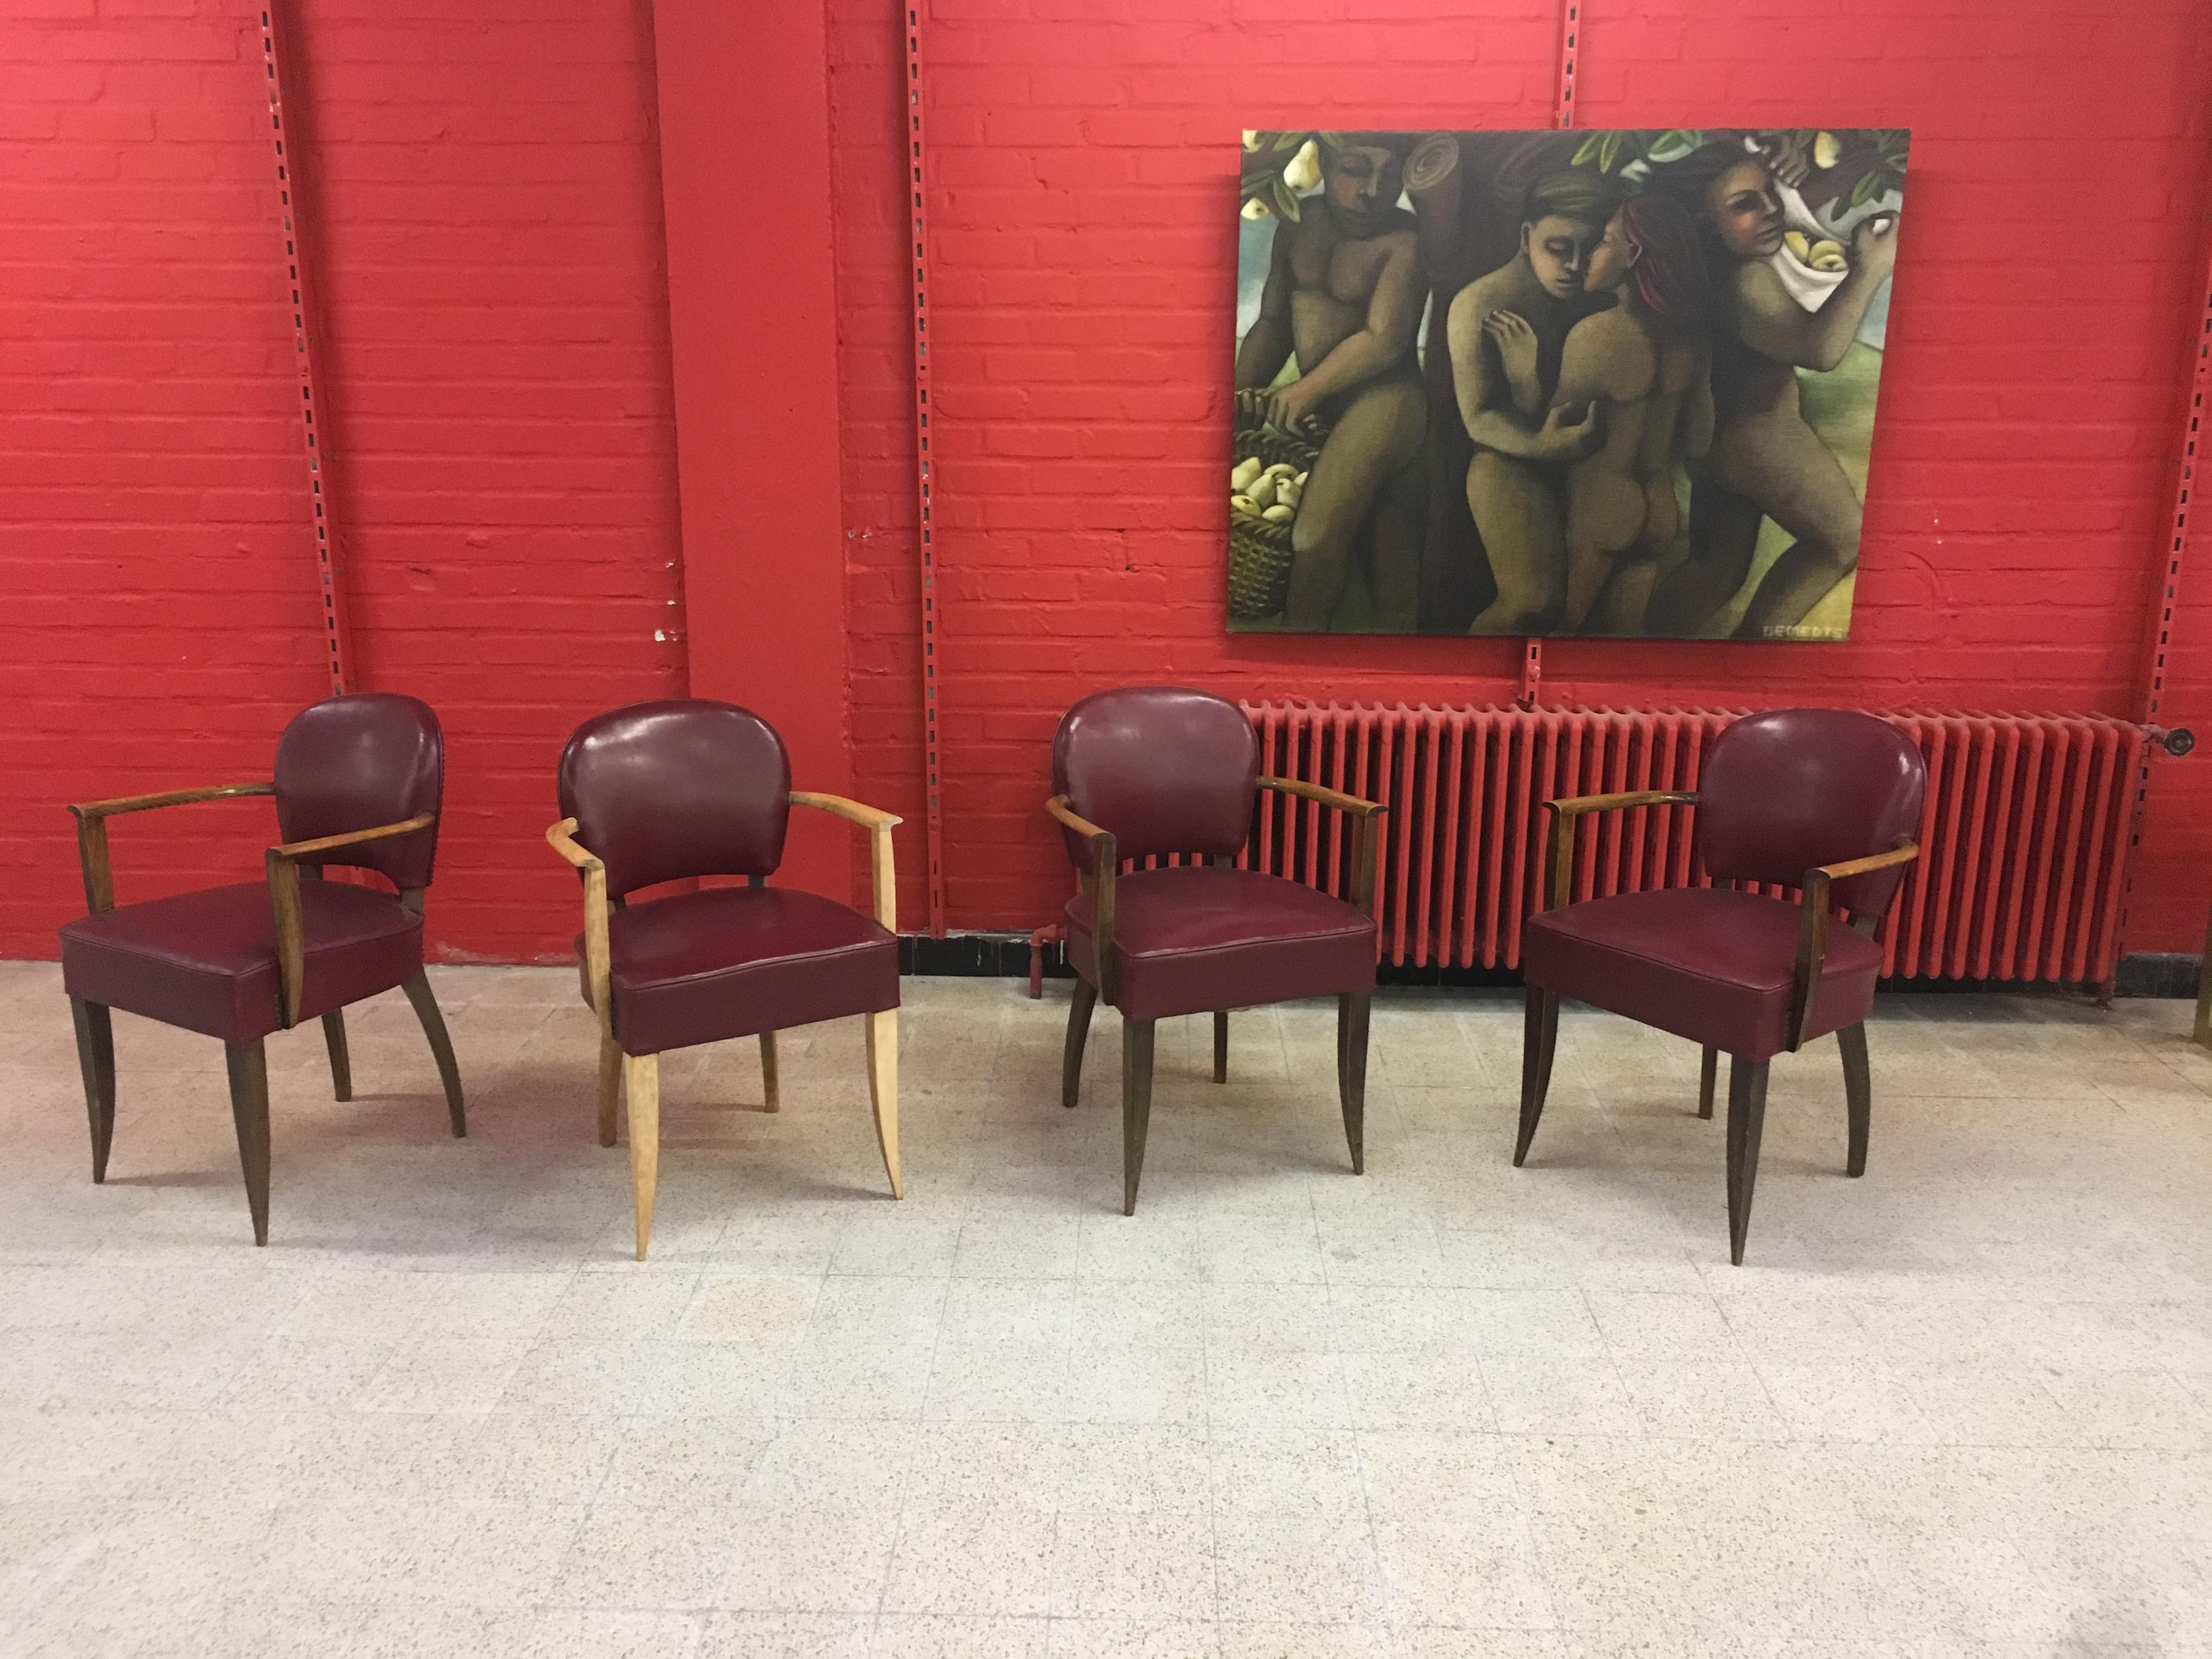 4 fauteuils Art déco dans le style de Jules Leleu, vers 1930-1940
fauteuil en hêtre dont 1 a été partiellement dépouillé.
Dossier et assise recouverts de similicuir, en bon état, mais avec quelques petits défauts.